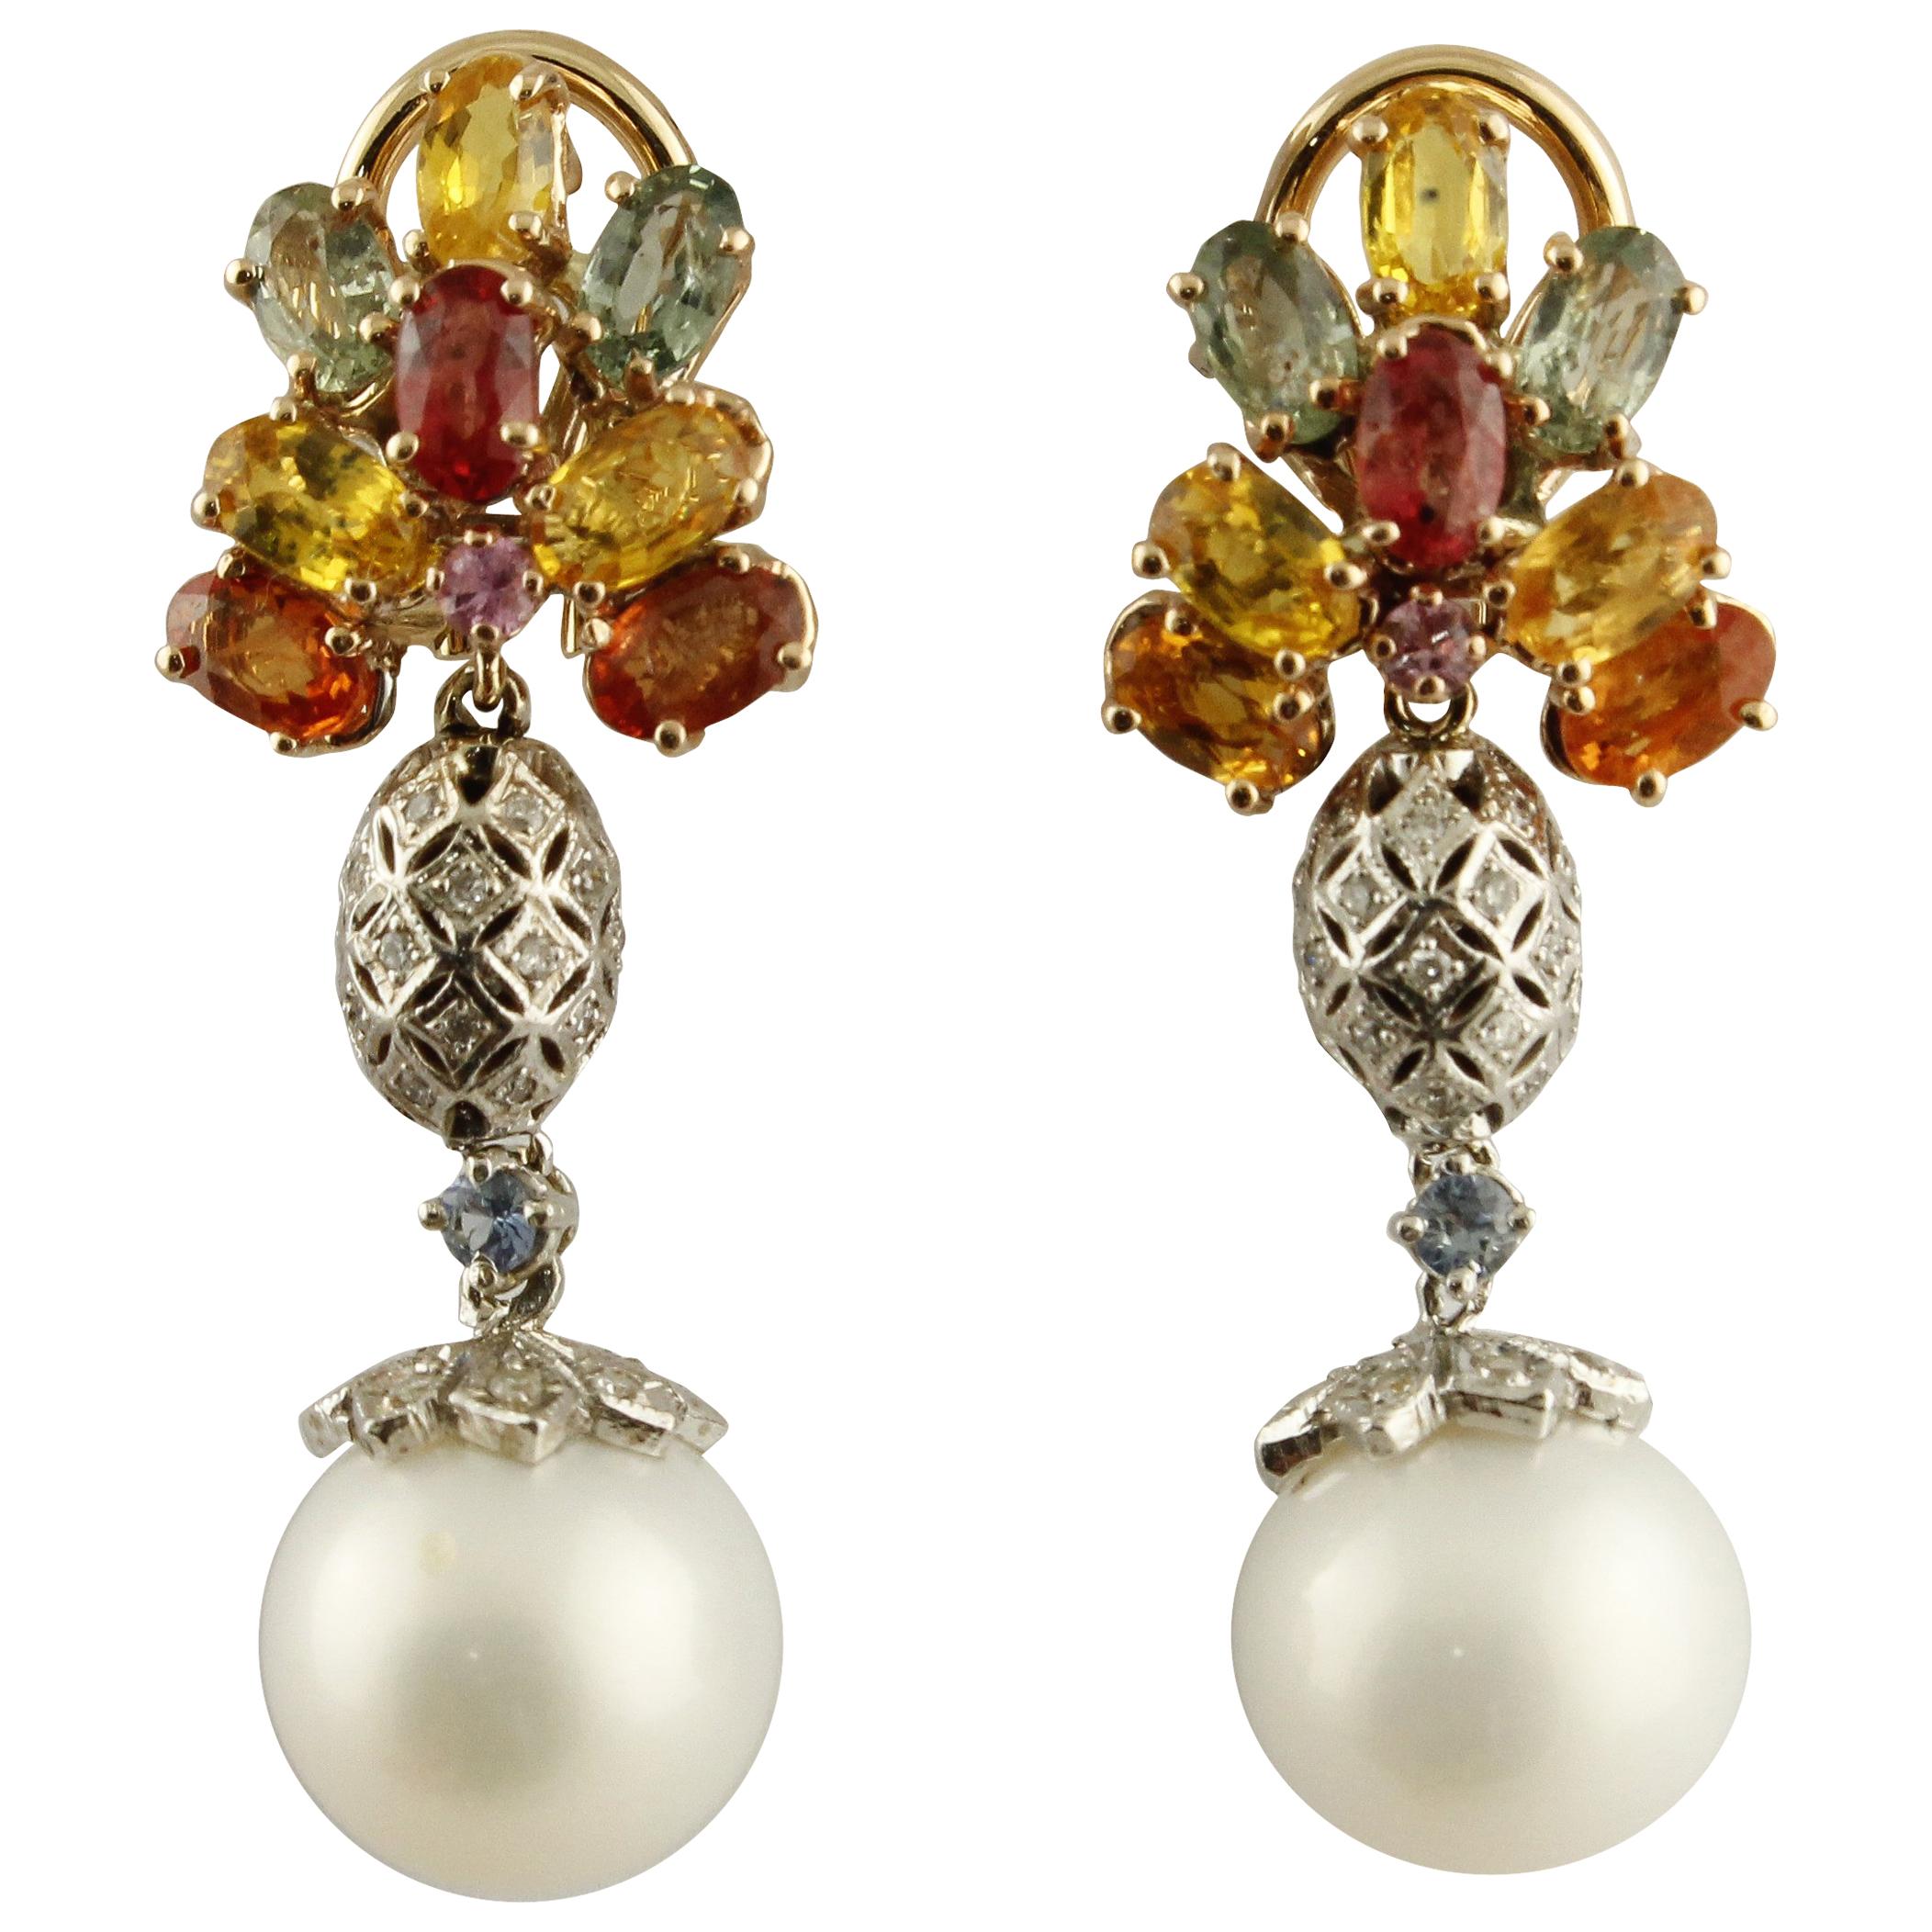 Ohrringe aus Weiß- und Roségold mit Diamanten, mehrfarbigen Saphiren und Perlen